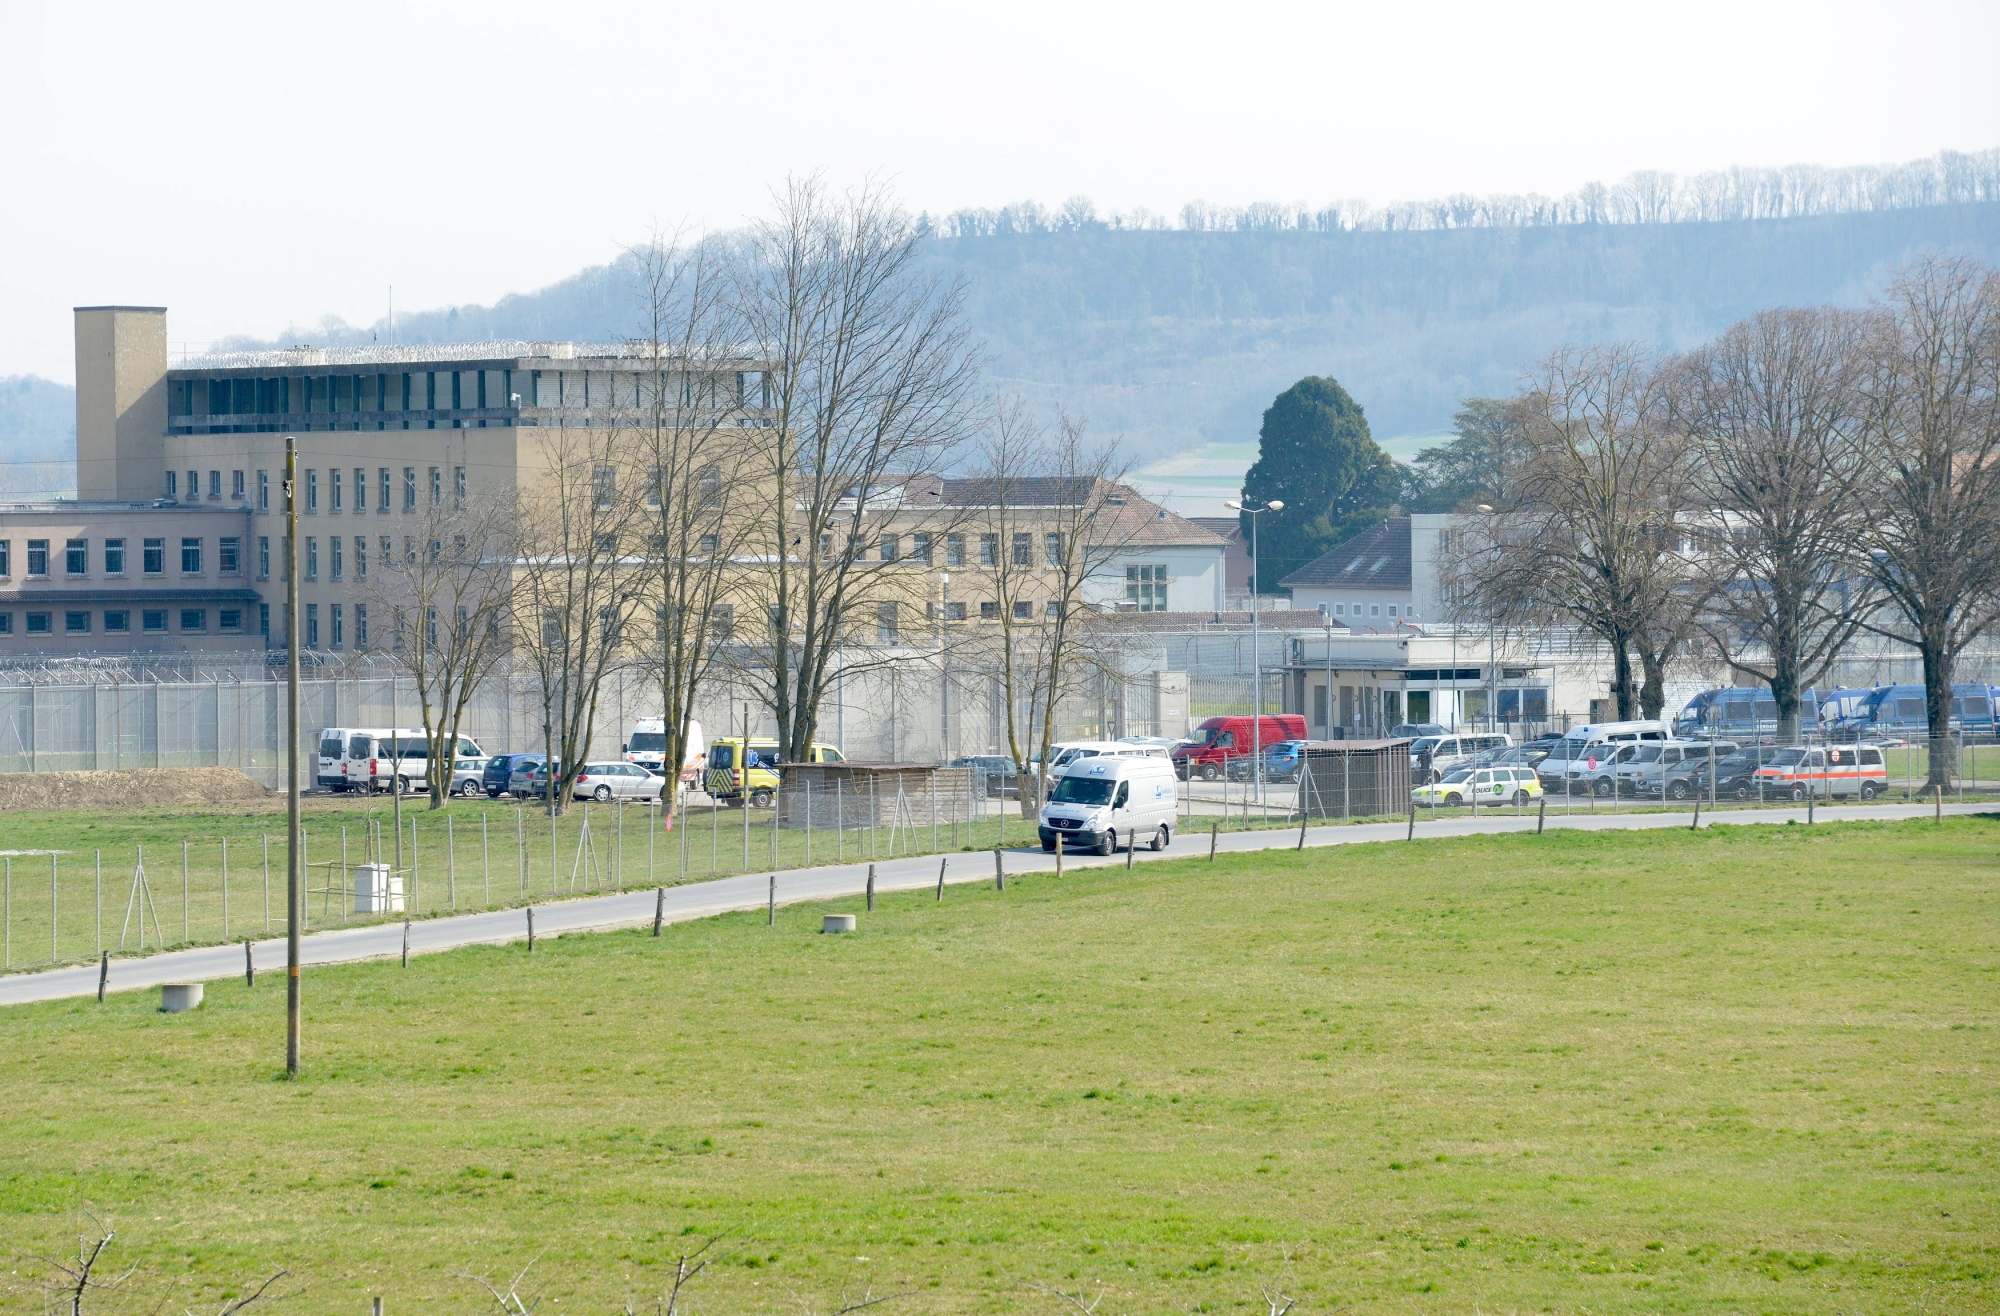 Des policiers bloquent l'acces a la prison de Bochuz lors d'une operation de securite de la police vaudoise ce mardi 18 mars 2014 aux Etablissements de la plaine de l'Orbe (EPO) a Orbe, Vaud. Une operation preventive de securite, visant a "garantir sur le long terme la securite du personnel et des personnes detenues" a debute mardi a 6h au penitencier vaudois de Bochuz. (KEYSTONE/Christian Brun) SCHWEIZ GEFAENGNIS BOCHUZ POLIZEI RAZZIA